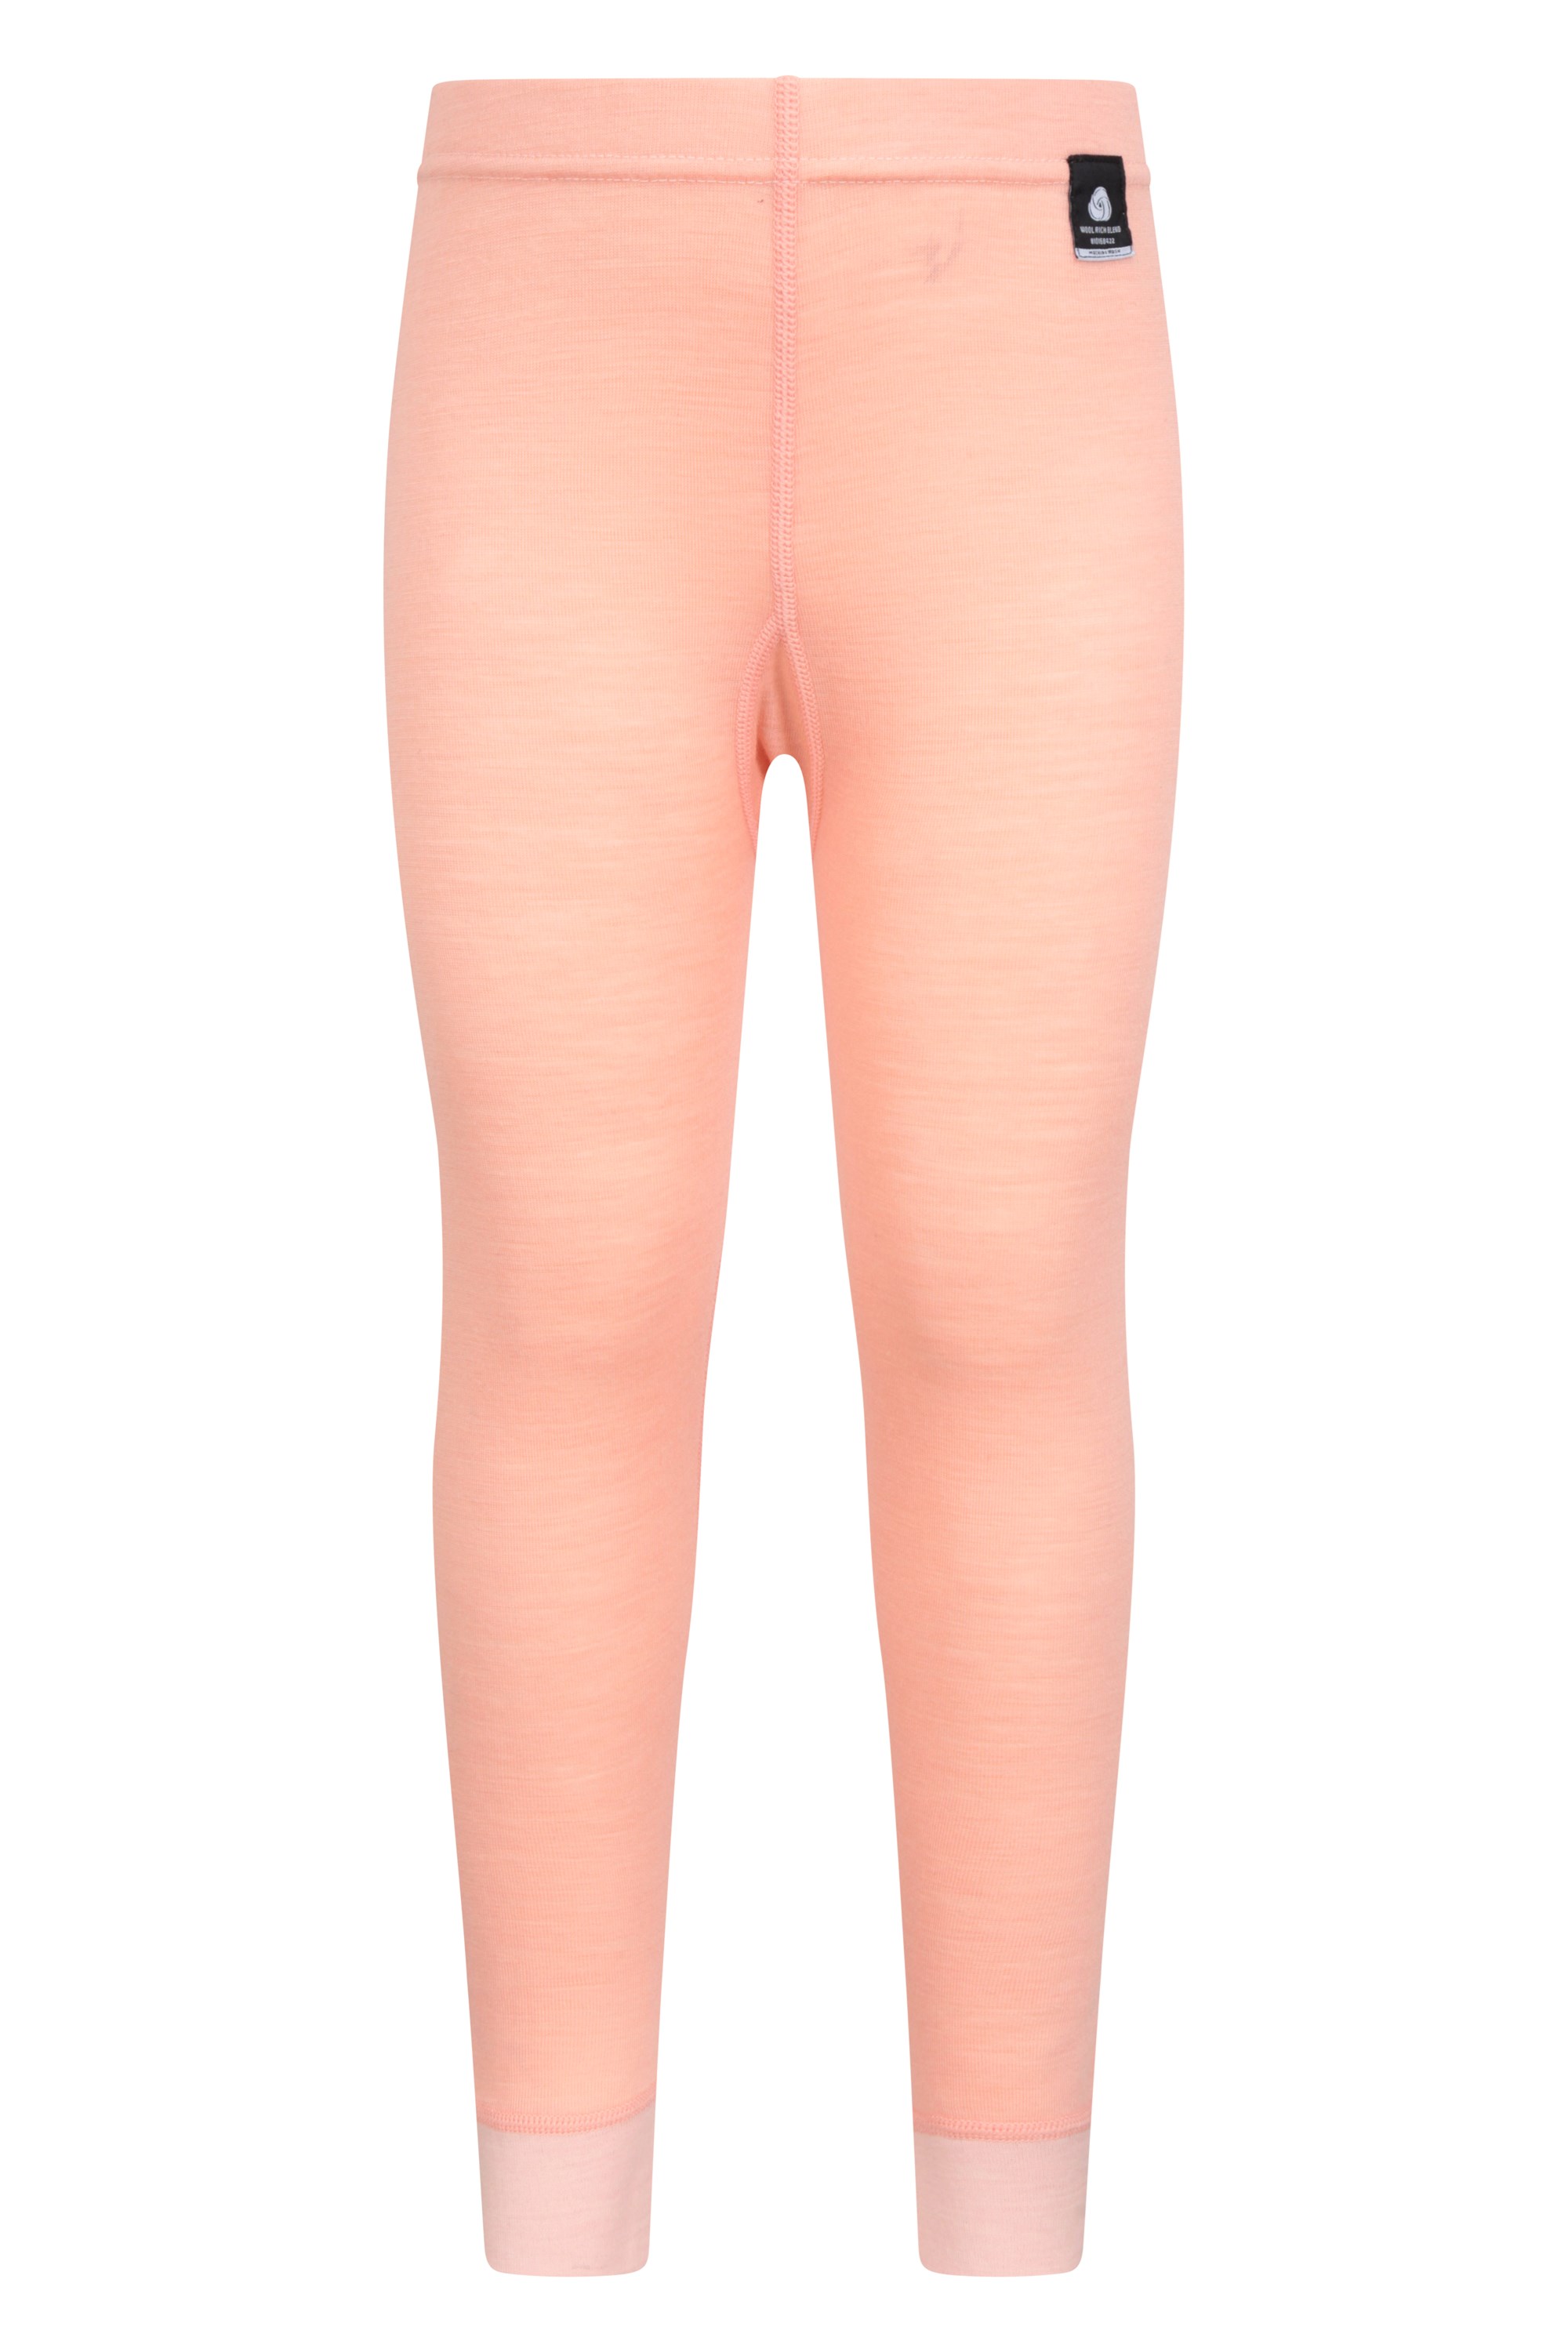 Merino Kids Base Layer Pants - Light Pink